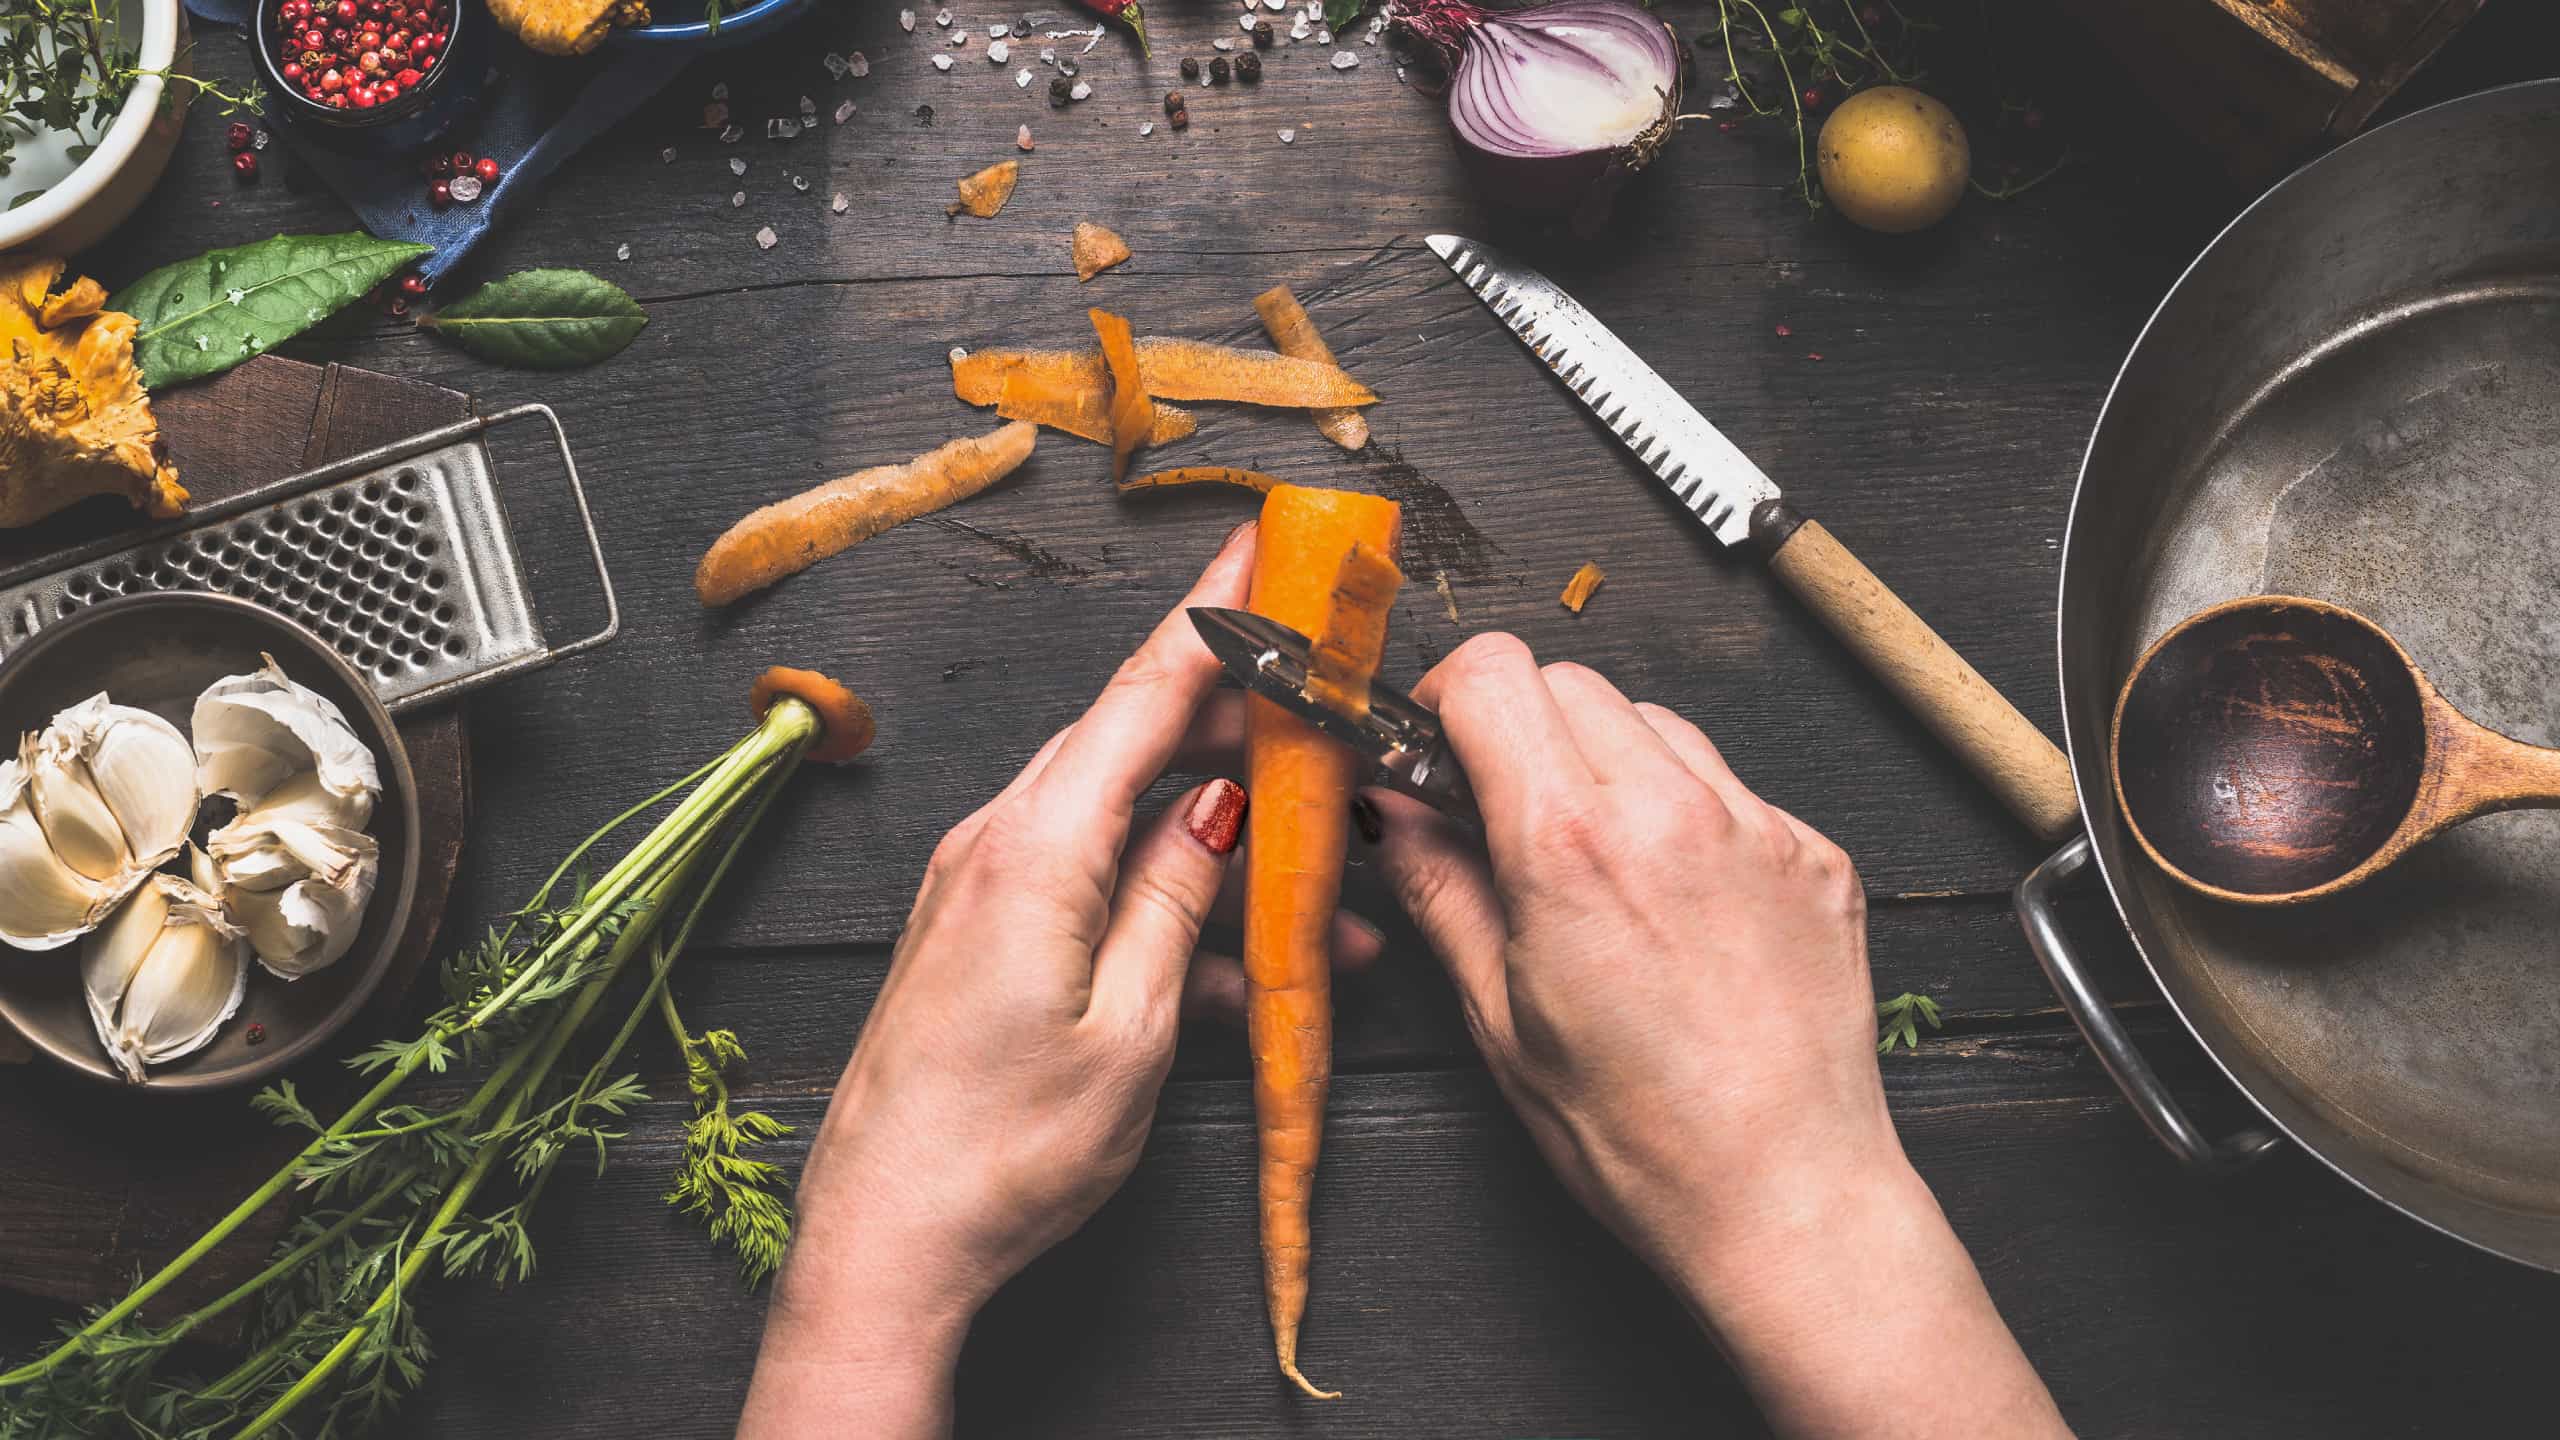 Mãos femininas a tirar a pele da cenoura utilizando um descascador, em mesa de madeira com legumes e vários utensílios de cozinha.